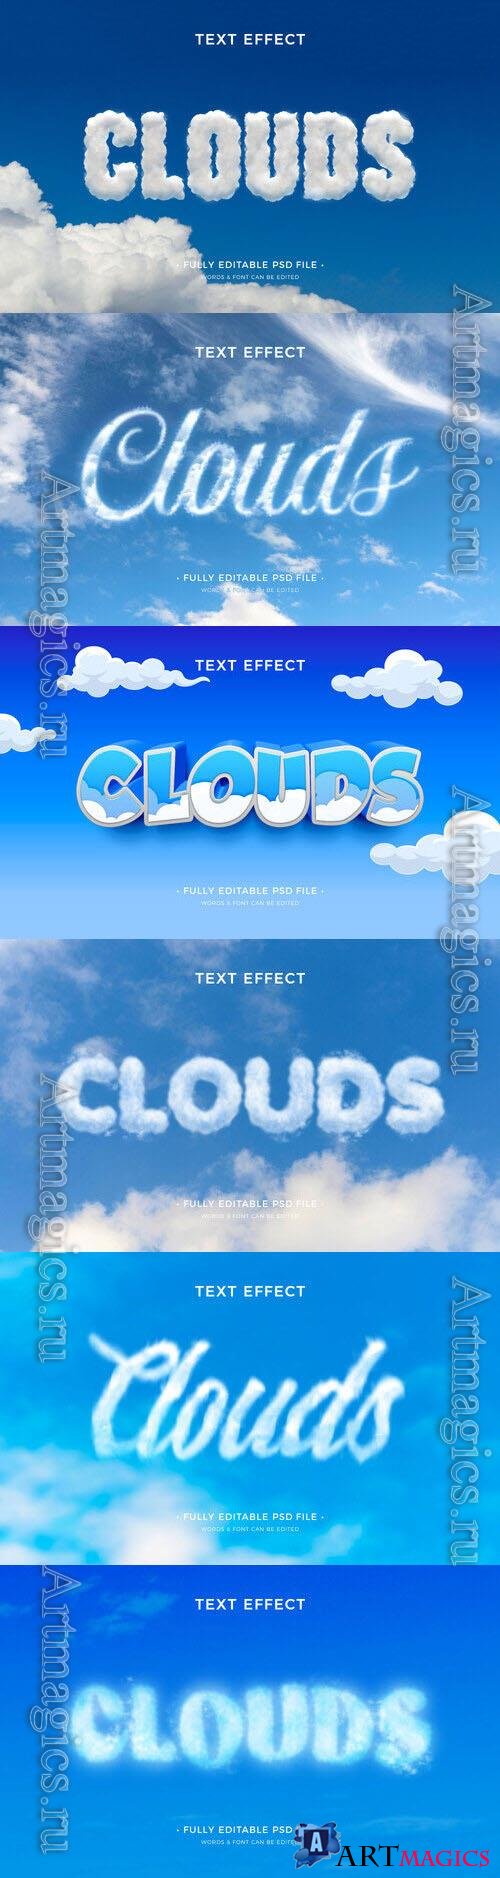 PSD clouds text effect template set 